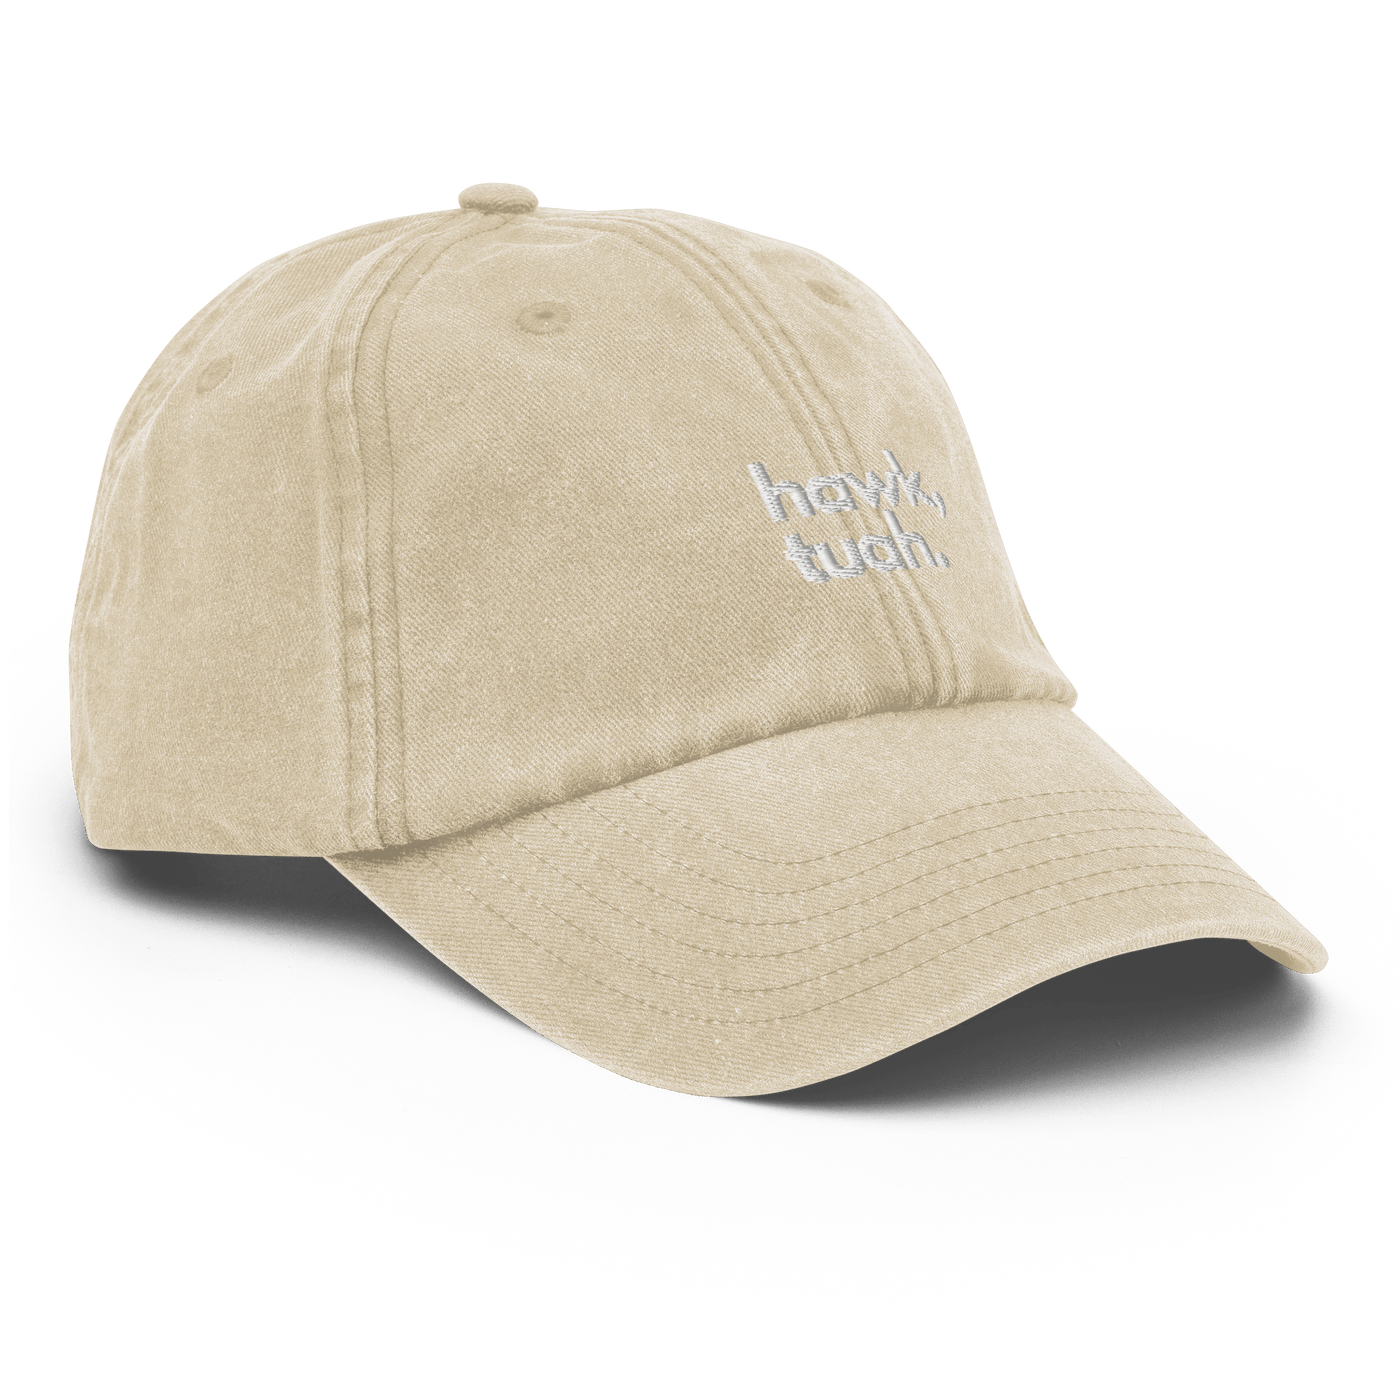 Hawk Tuah Vintage Hat - Vintage Stone - Just Another Cap Store